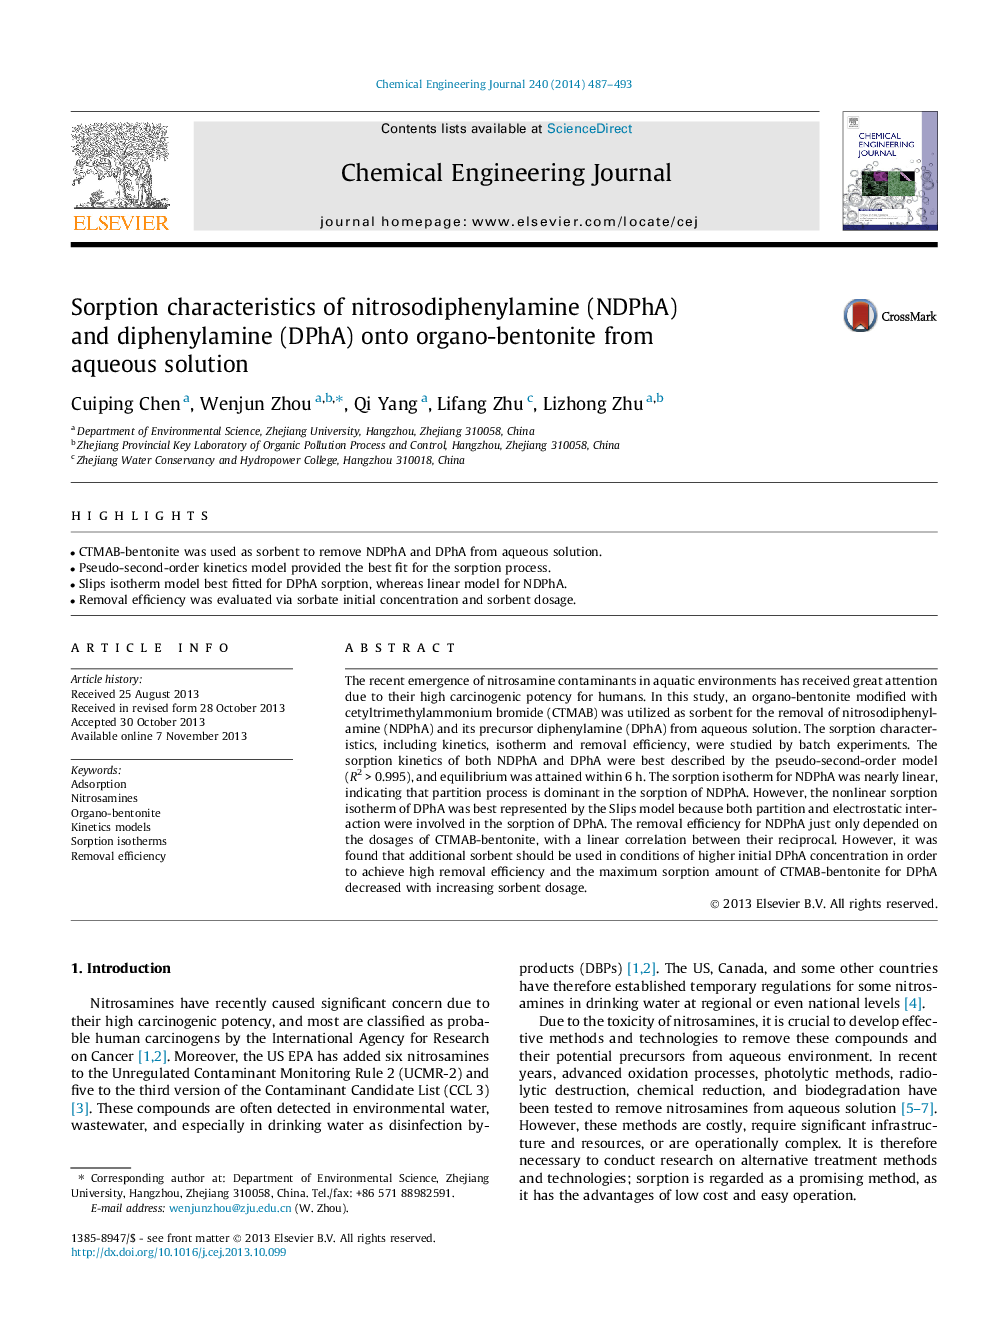 Sorption characteristics of nitrosodiphenylamine (NDPhA) and diphenylamine (DPhA) onto organo-bentonite from aqueous solution